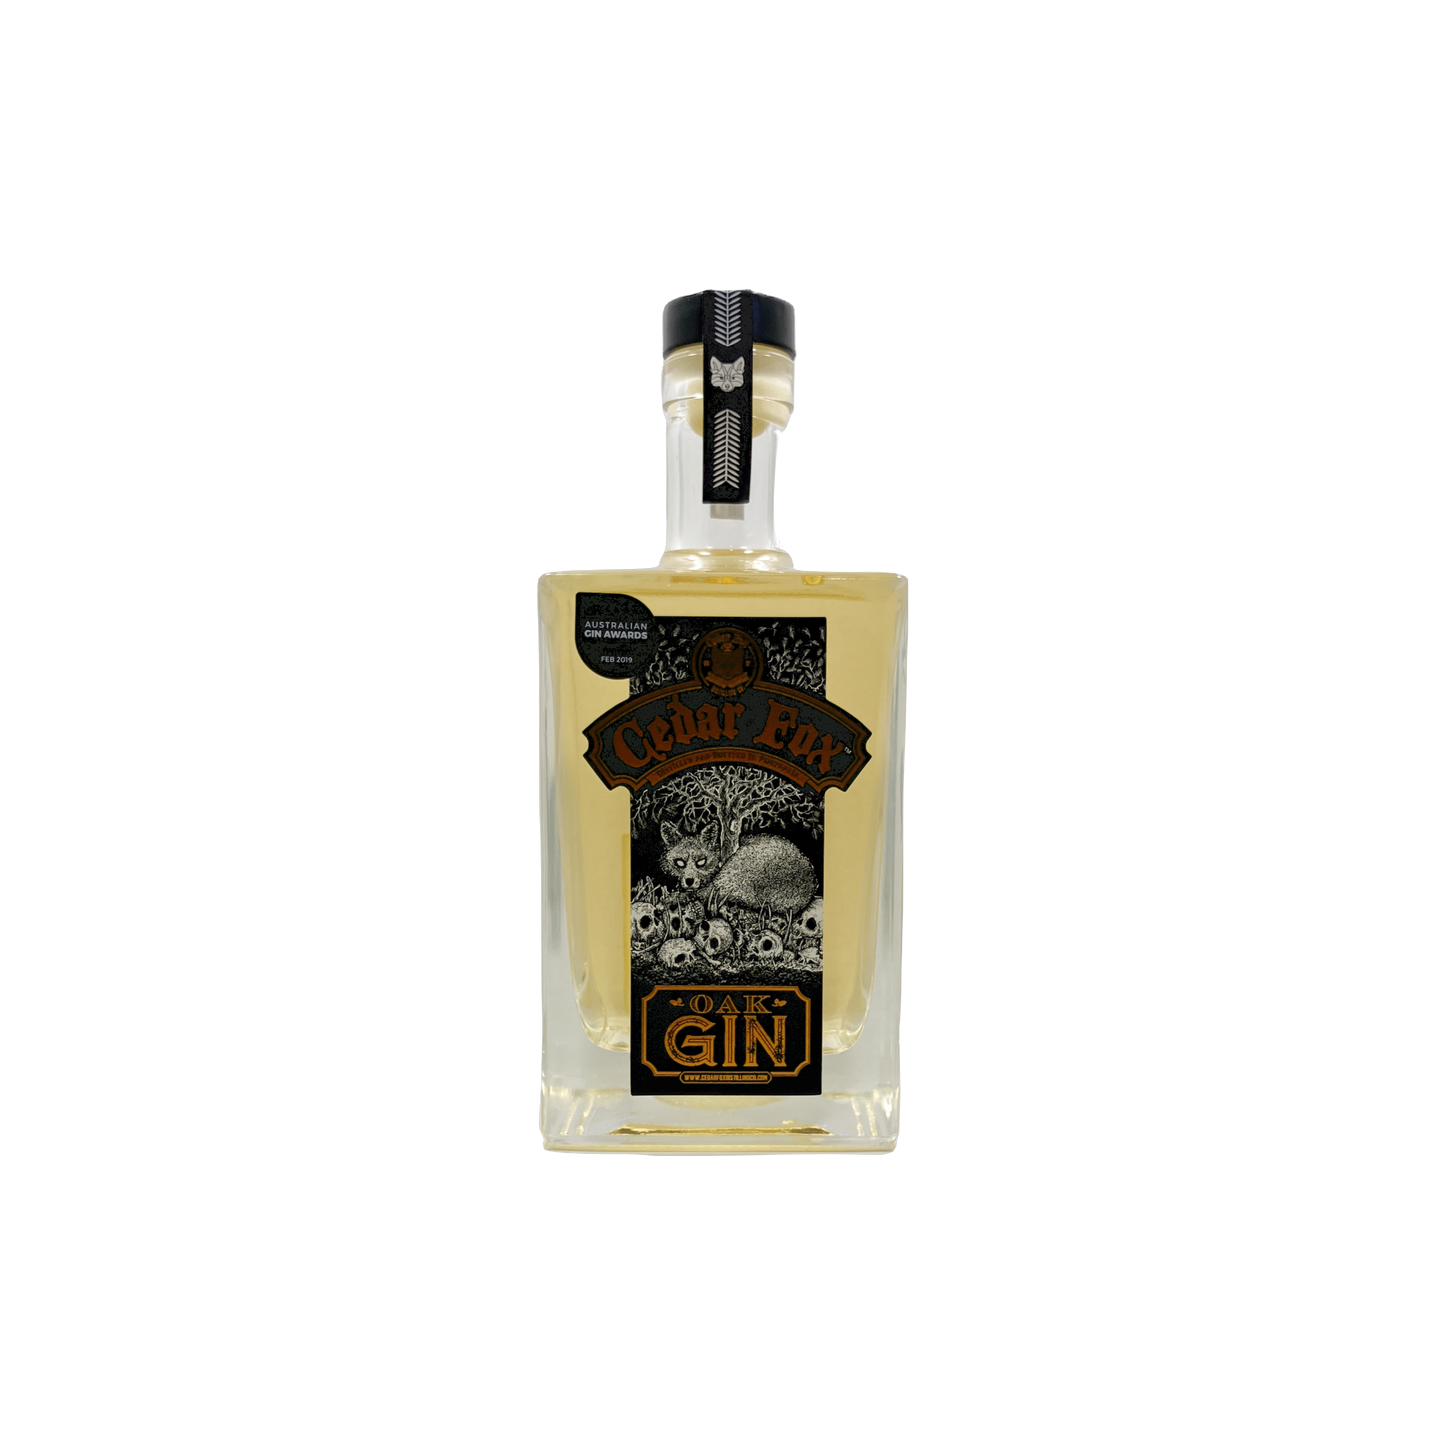 Cedar Fox Oak Aged Gin 700ml 45%